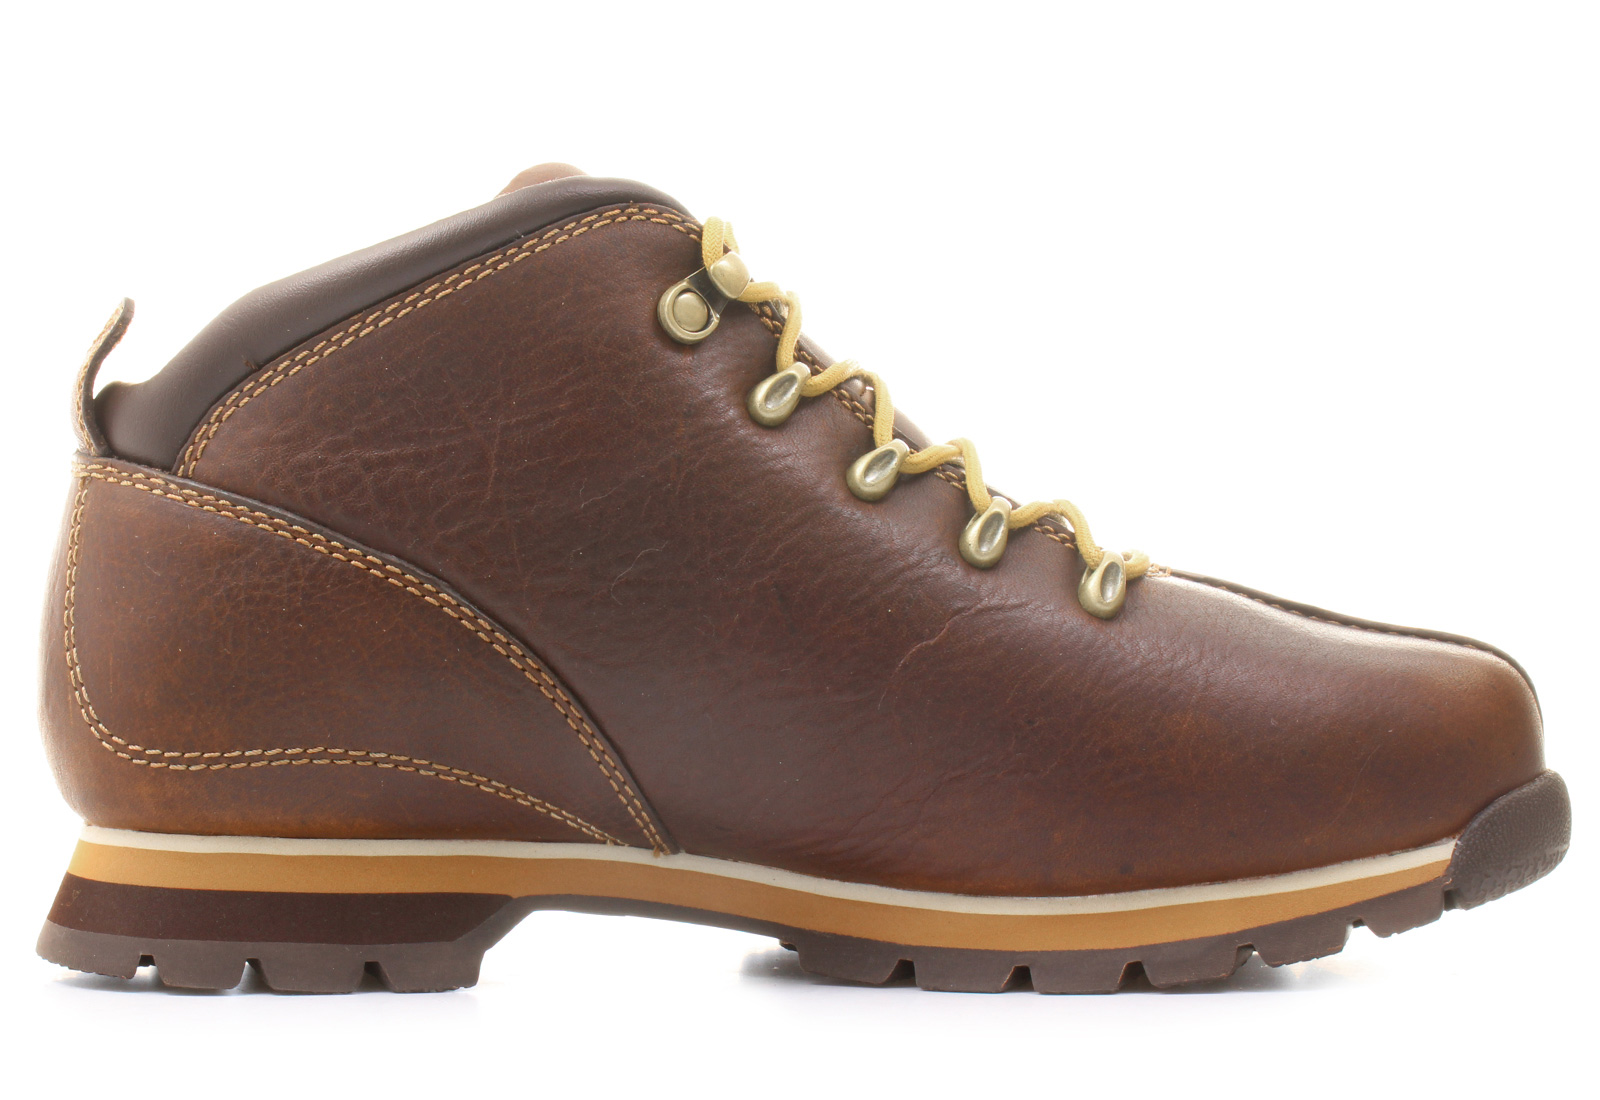 Timberland Boots - Splitrock Hiker - 41084-brn - Online shop for ...